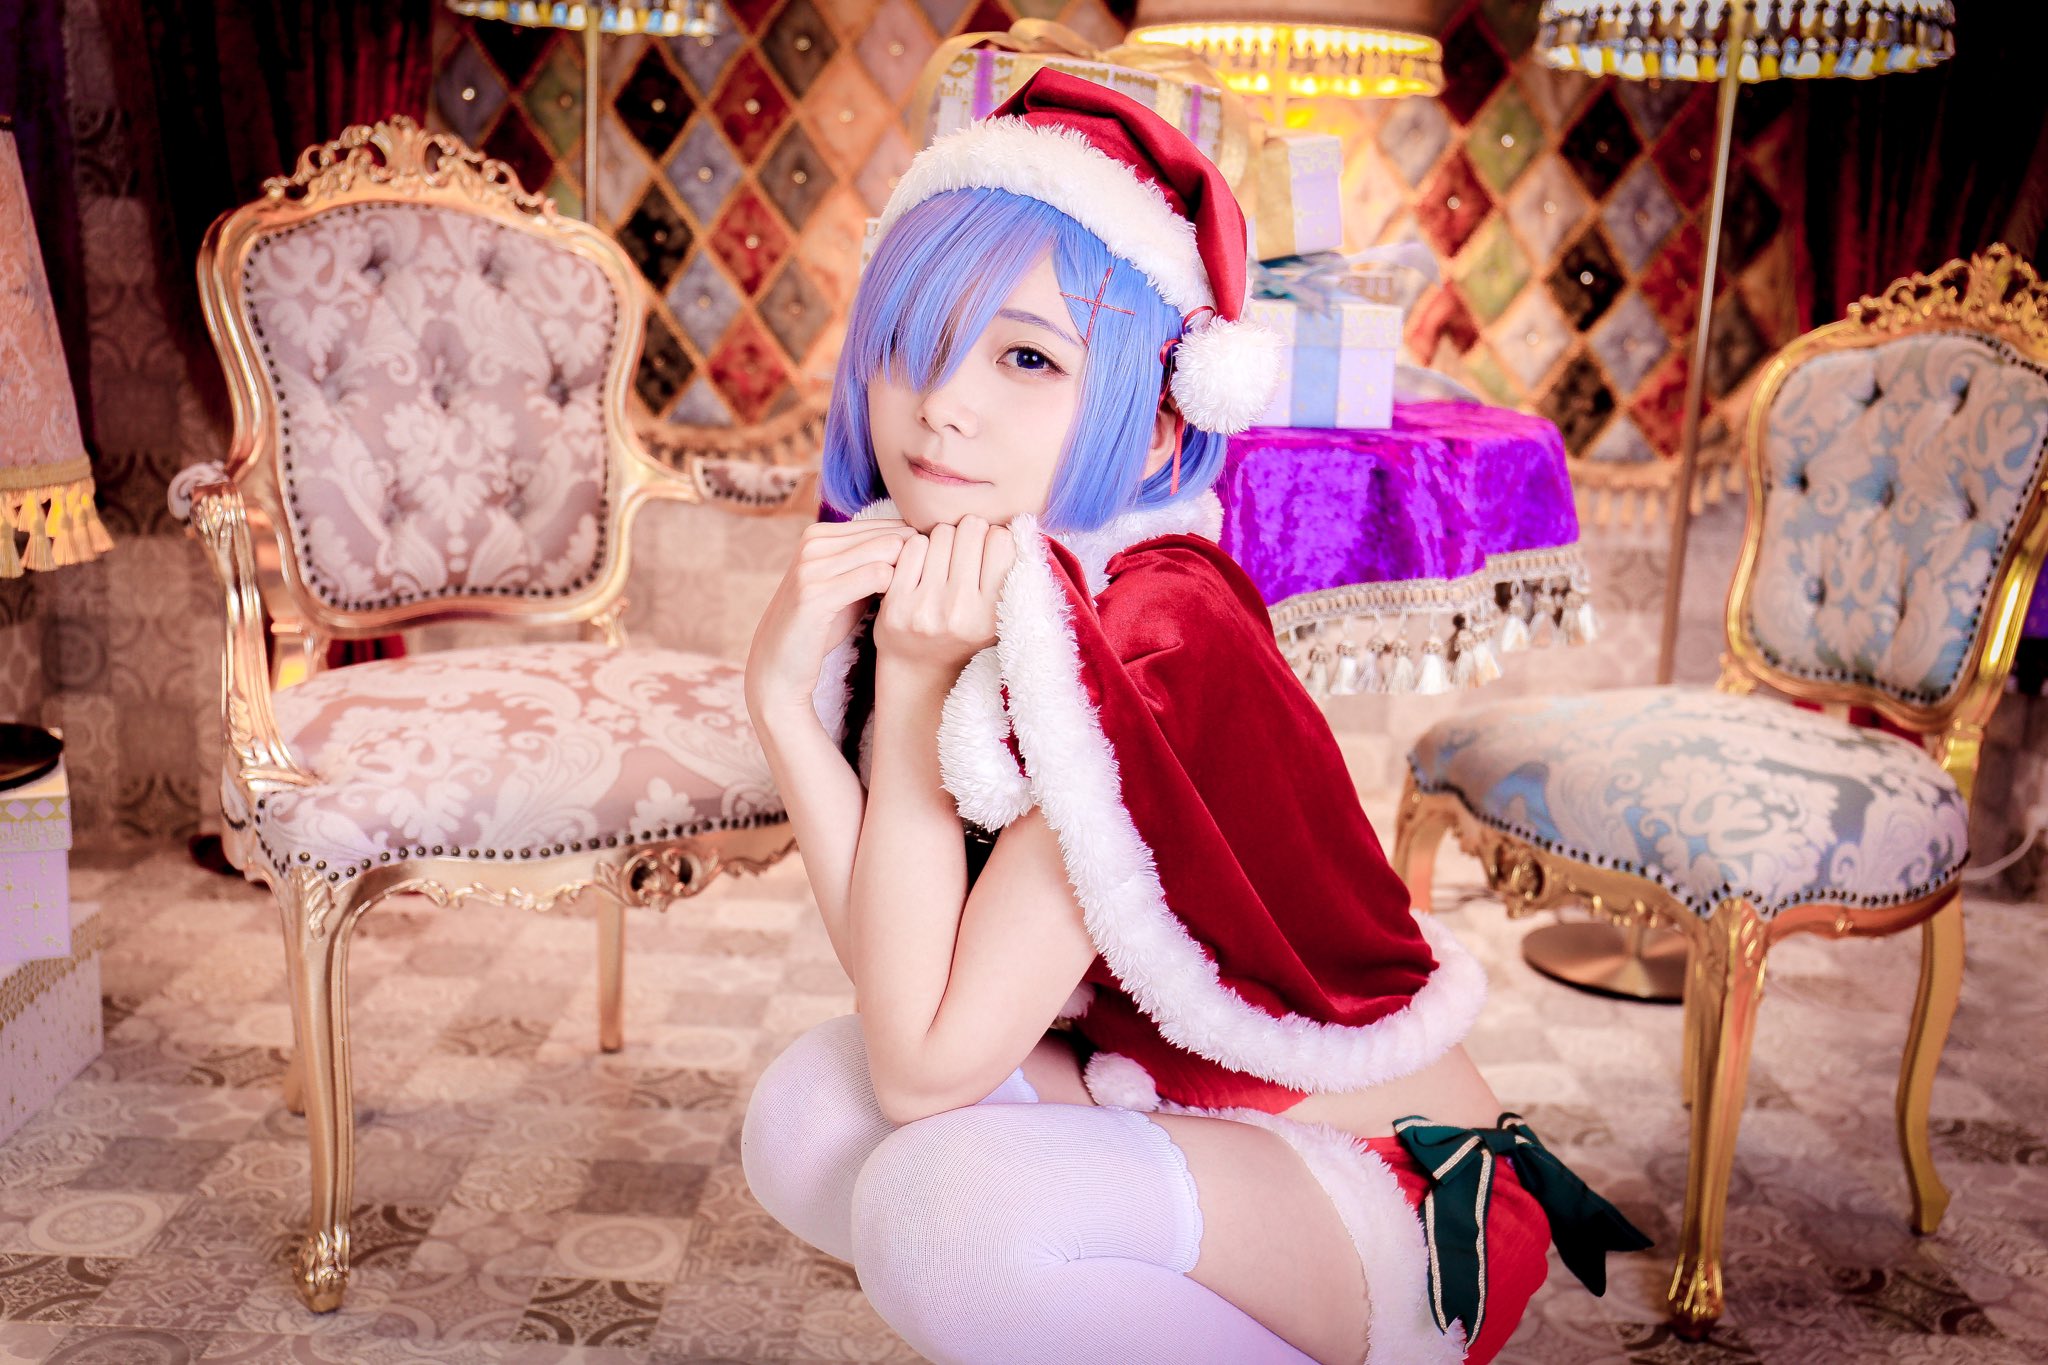 画像,Re:ゼロから始める異世界生活 / レムーーーOriginal Winter ver...✩⋆*✴︎ Merry Christmas ✴︎⋆*✩..Photo.…